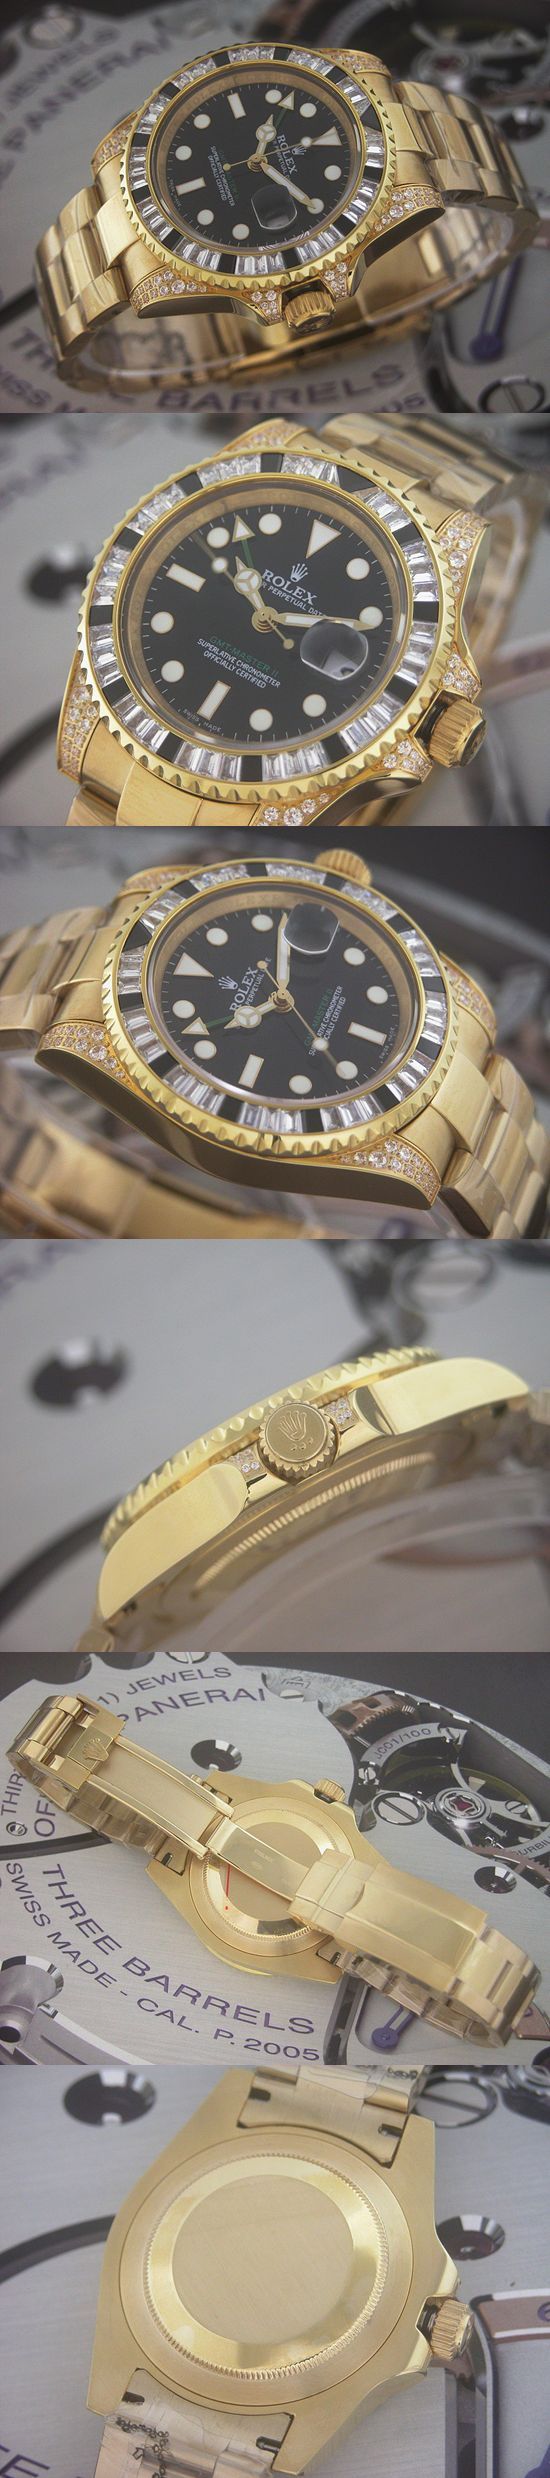 おしゃれなブランド時計がロレックス-GMTマスターII-ROLEX-16758-15-男性用を提供します.